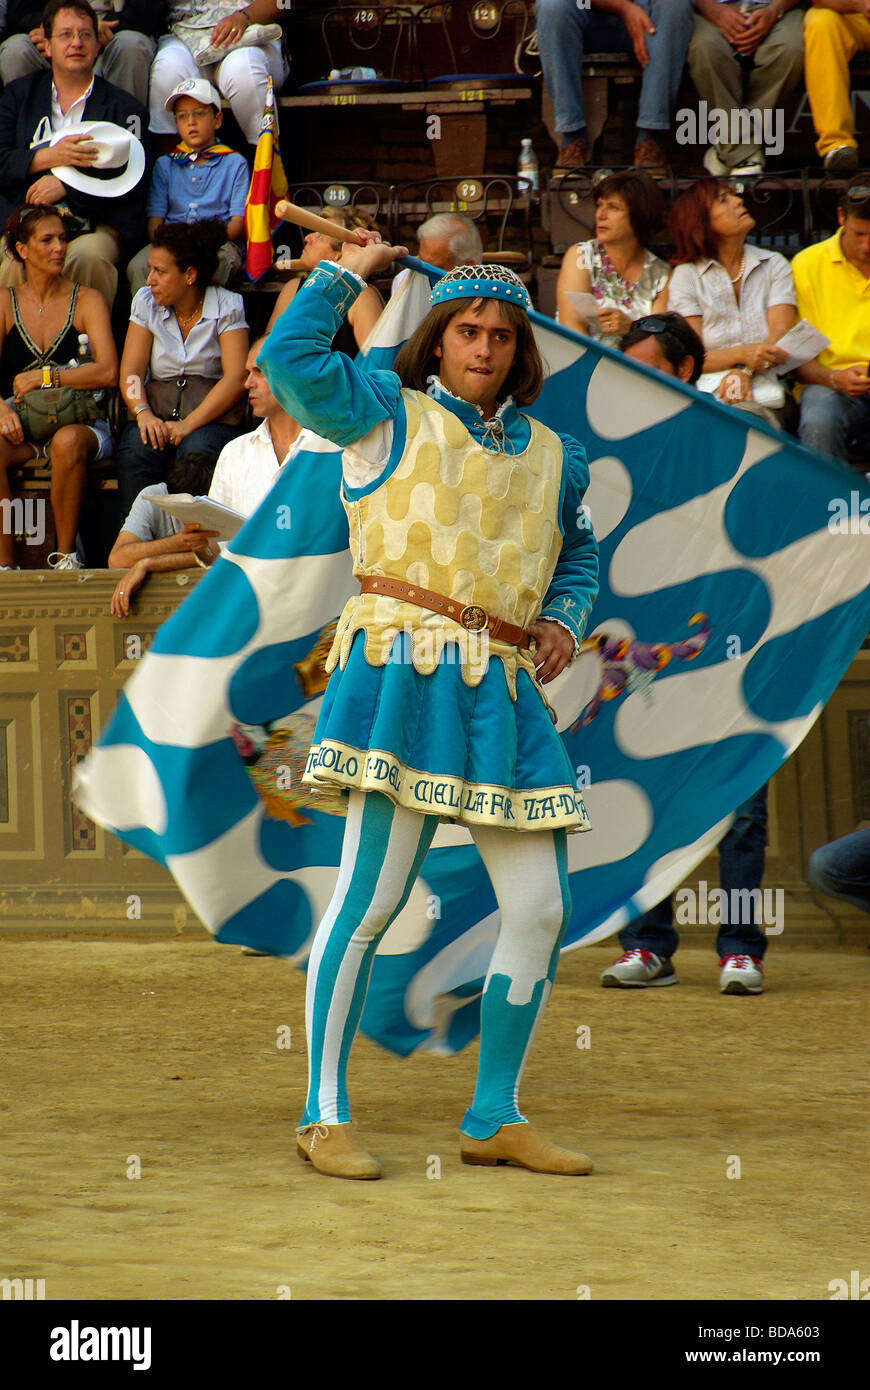 Lanceur de drapeaux de l'Onda ou Wave - Contrada Siena Palio, un événement deux fois par an de l'apparat et course de chevaux Banque D'Images